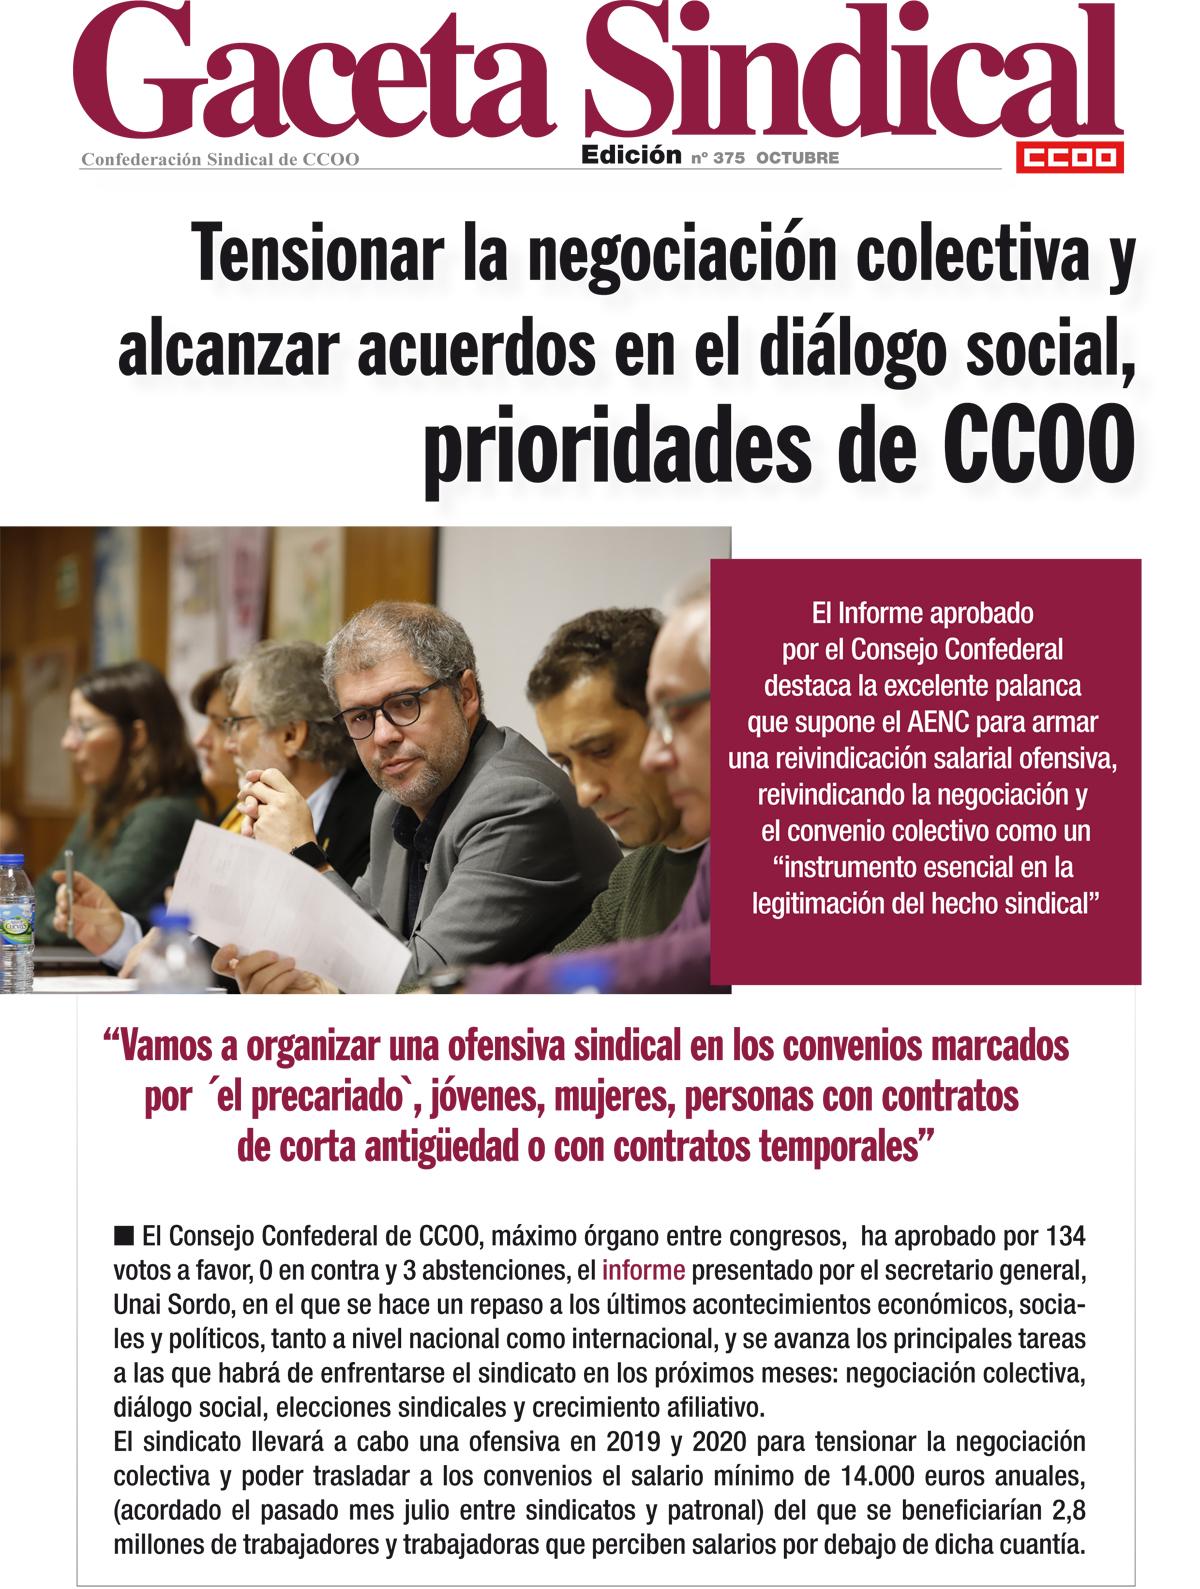 Reunión del Consejo Confederal de CCOO